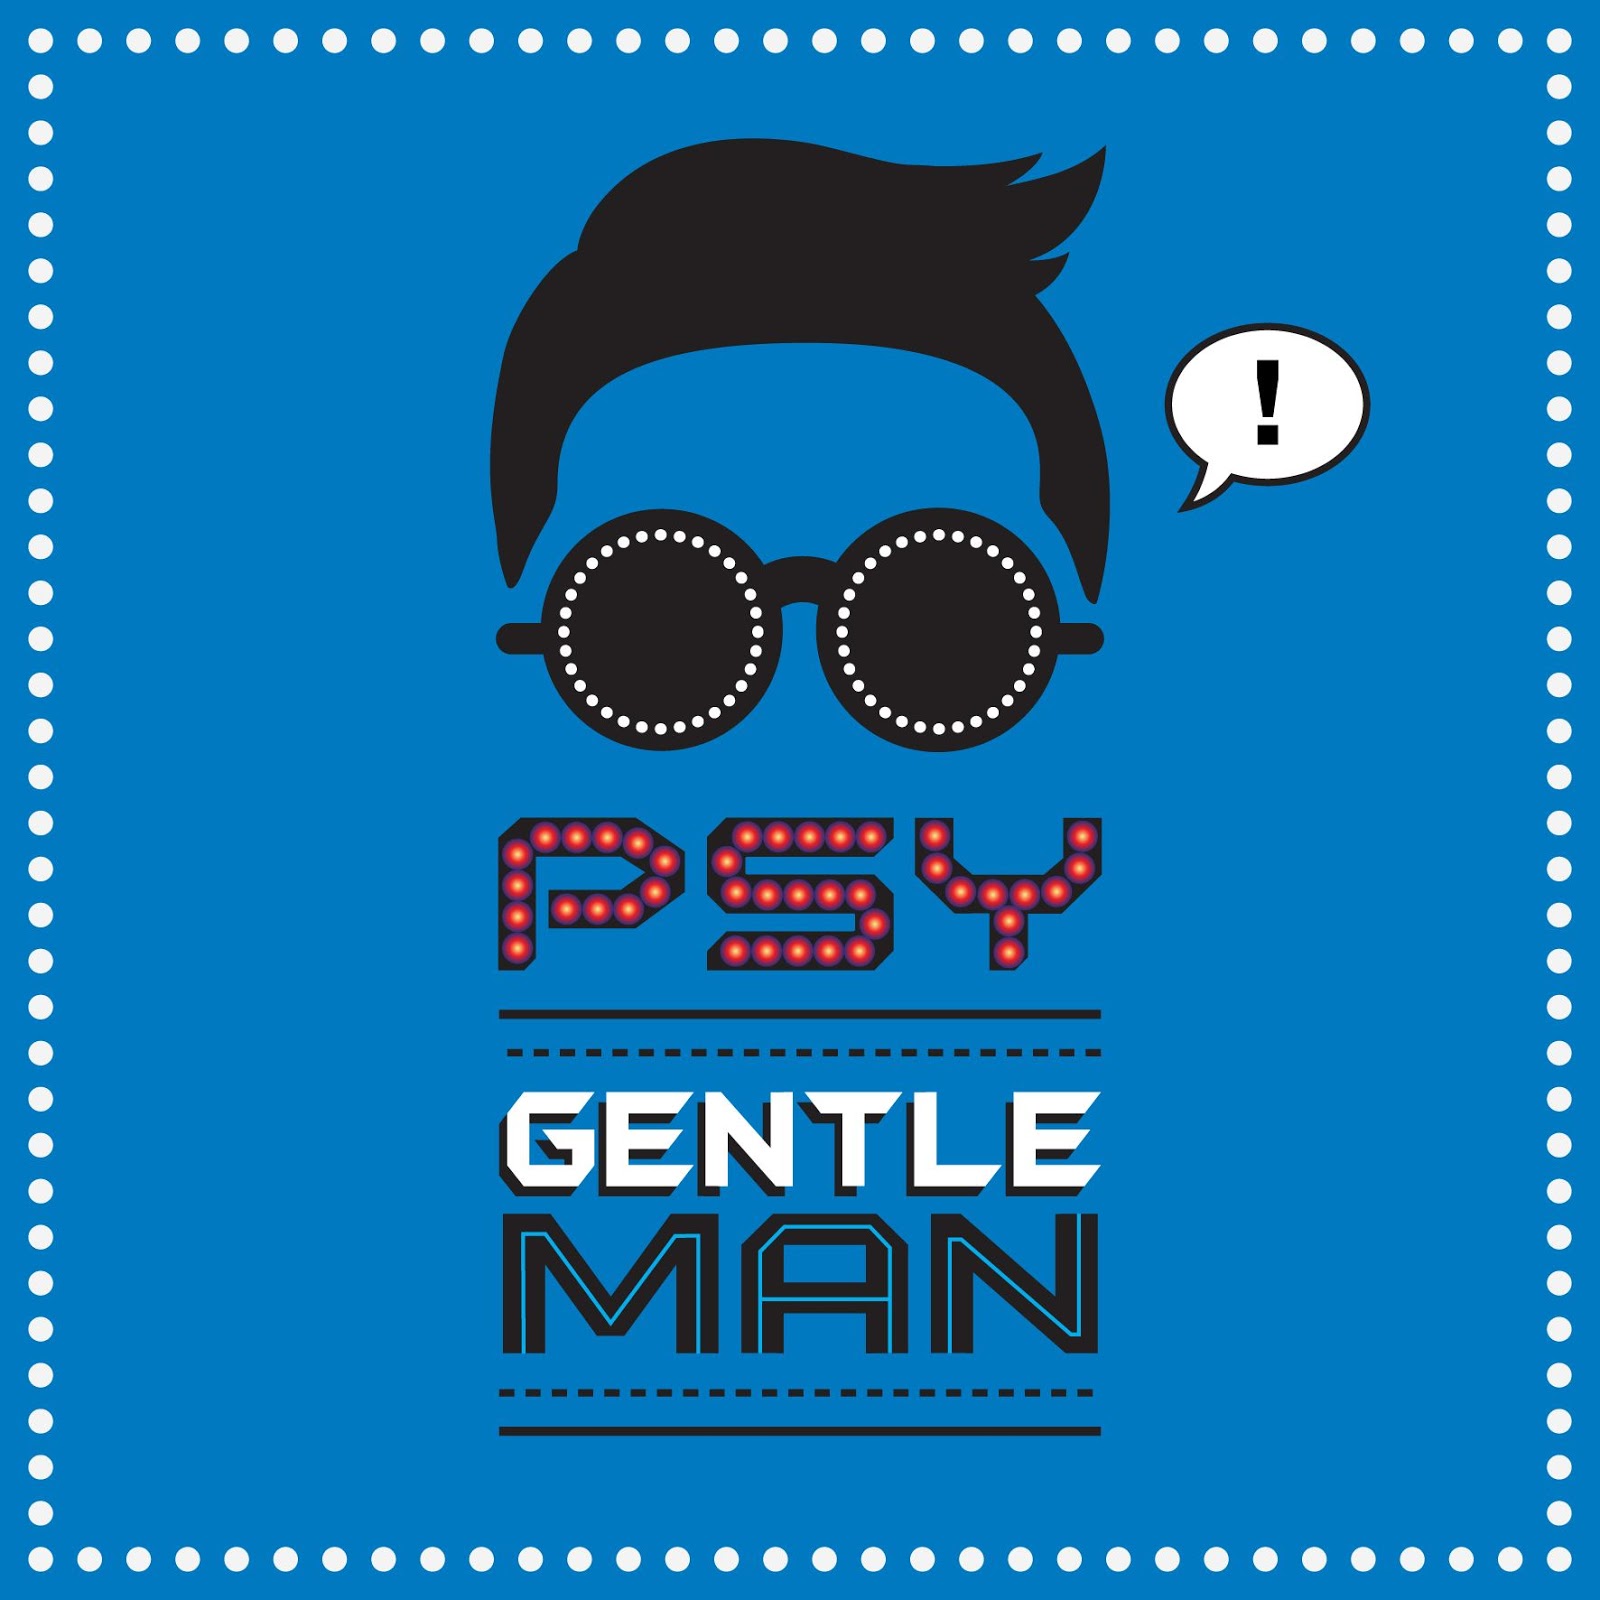 PSY - Gentleman MV